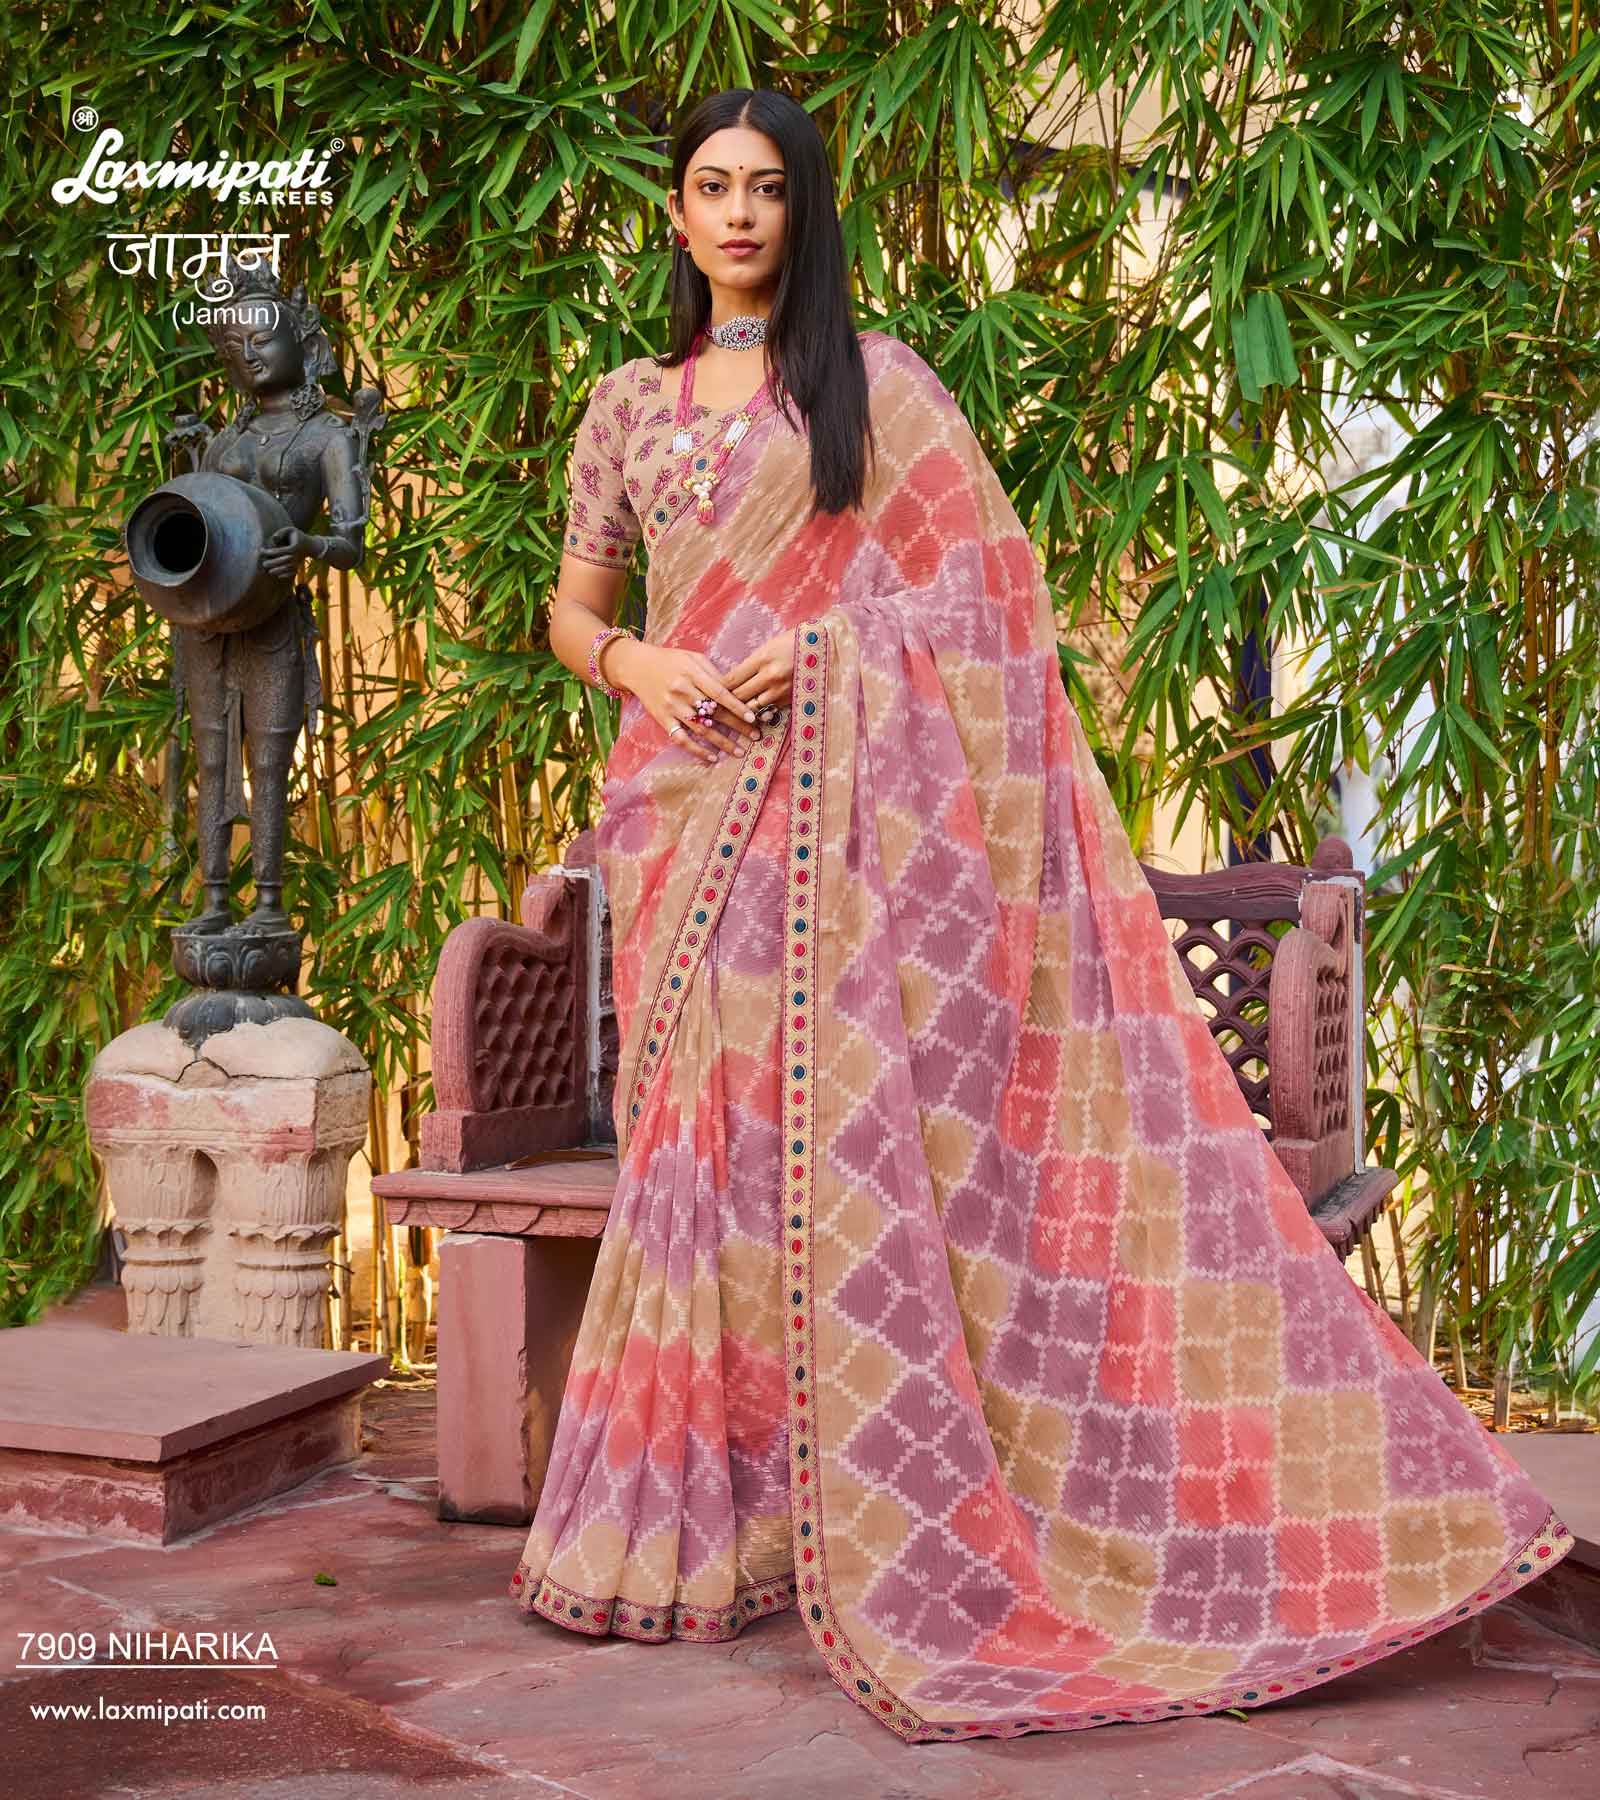 Buy Laxmipati Fashion Women's Banarasi Silk Designer Saree at Amazon.in